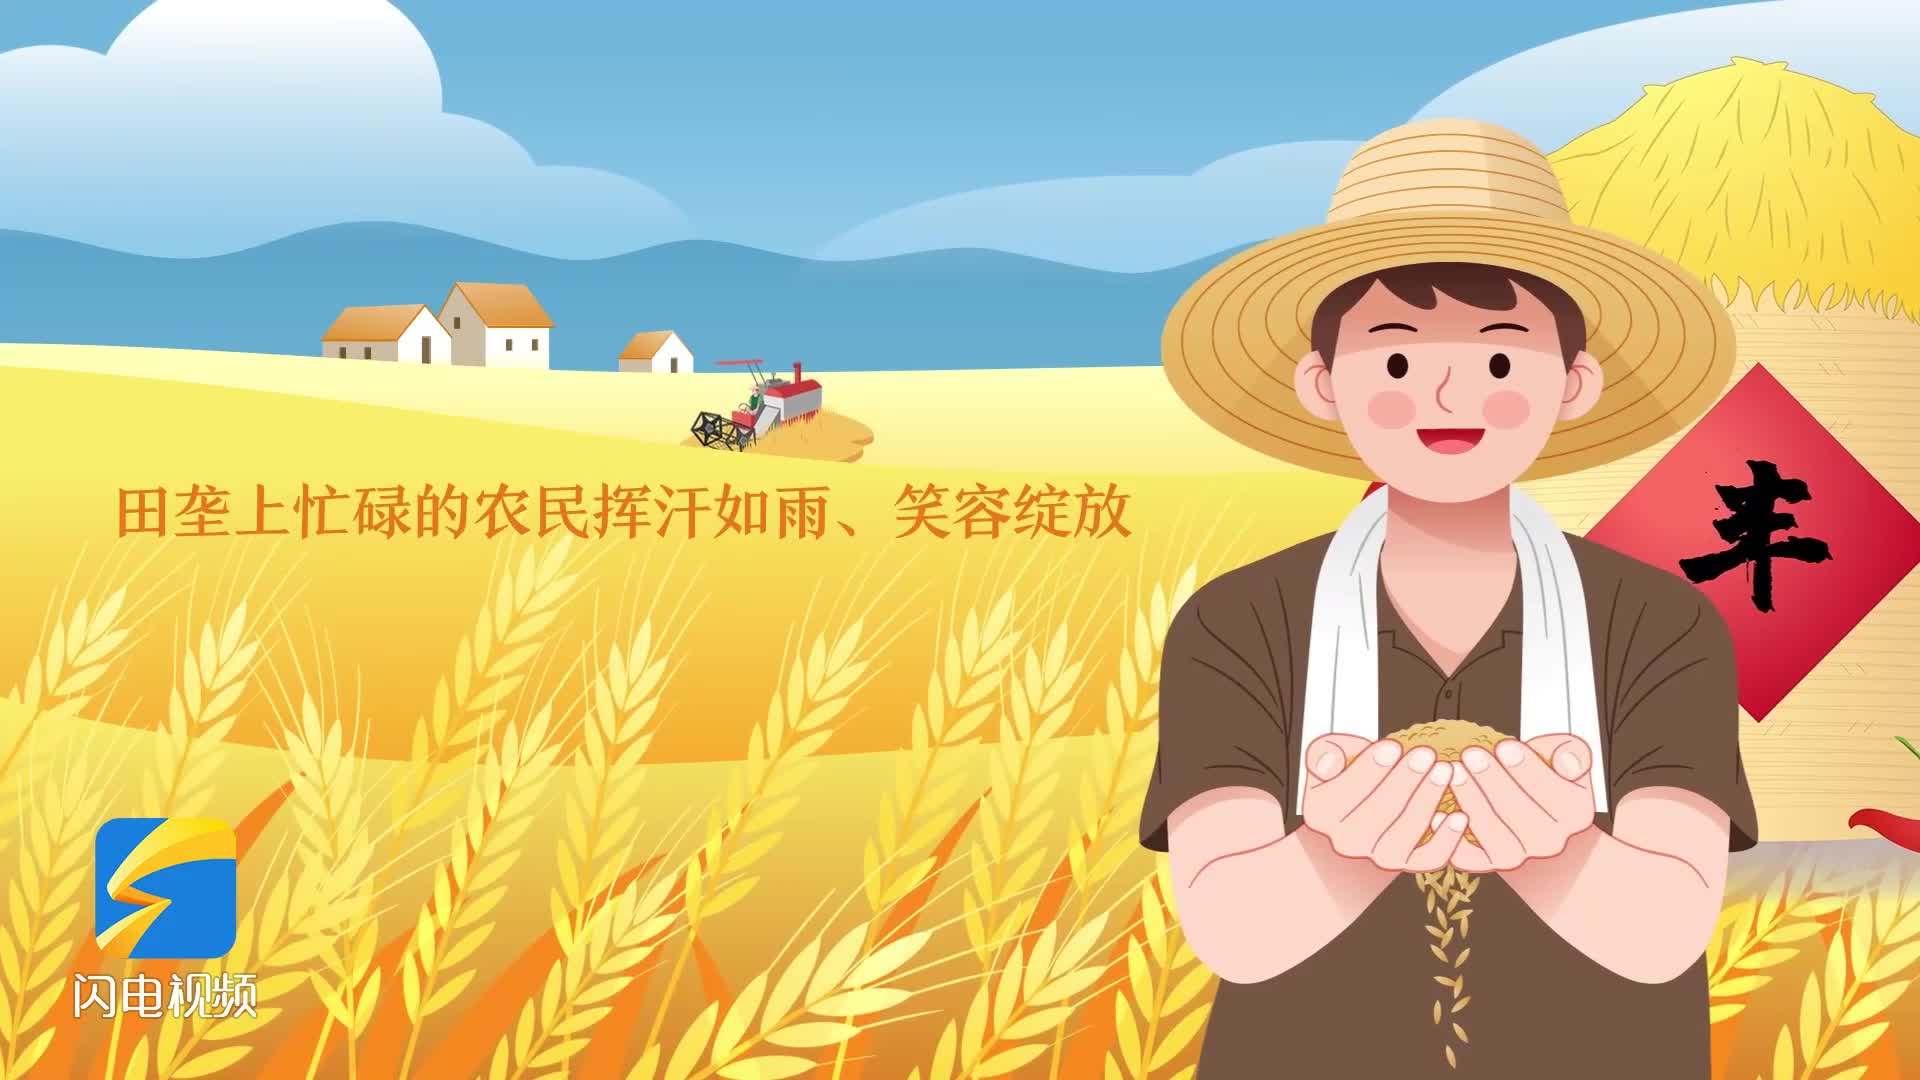 中国农民丰收节｜给我一分钟，看看我们家的新变化